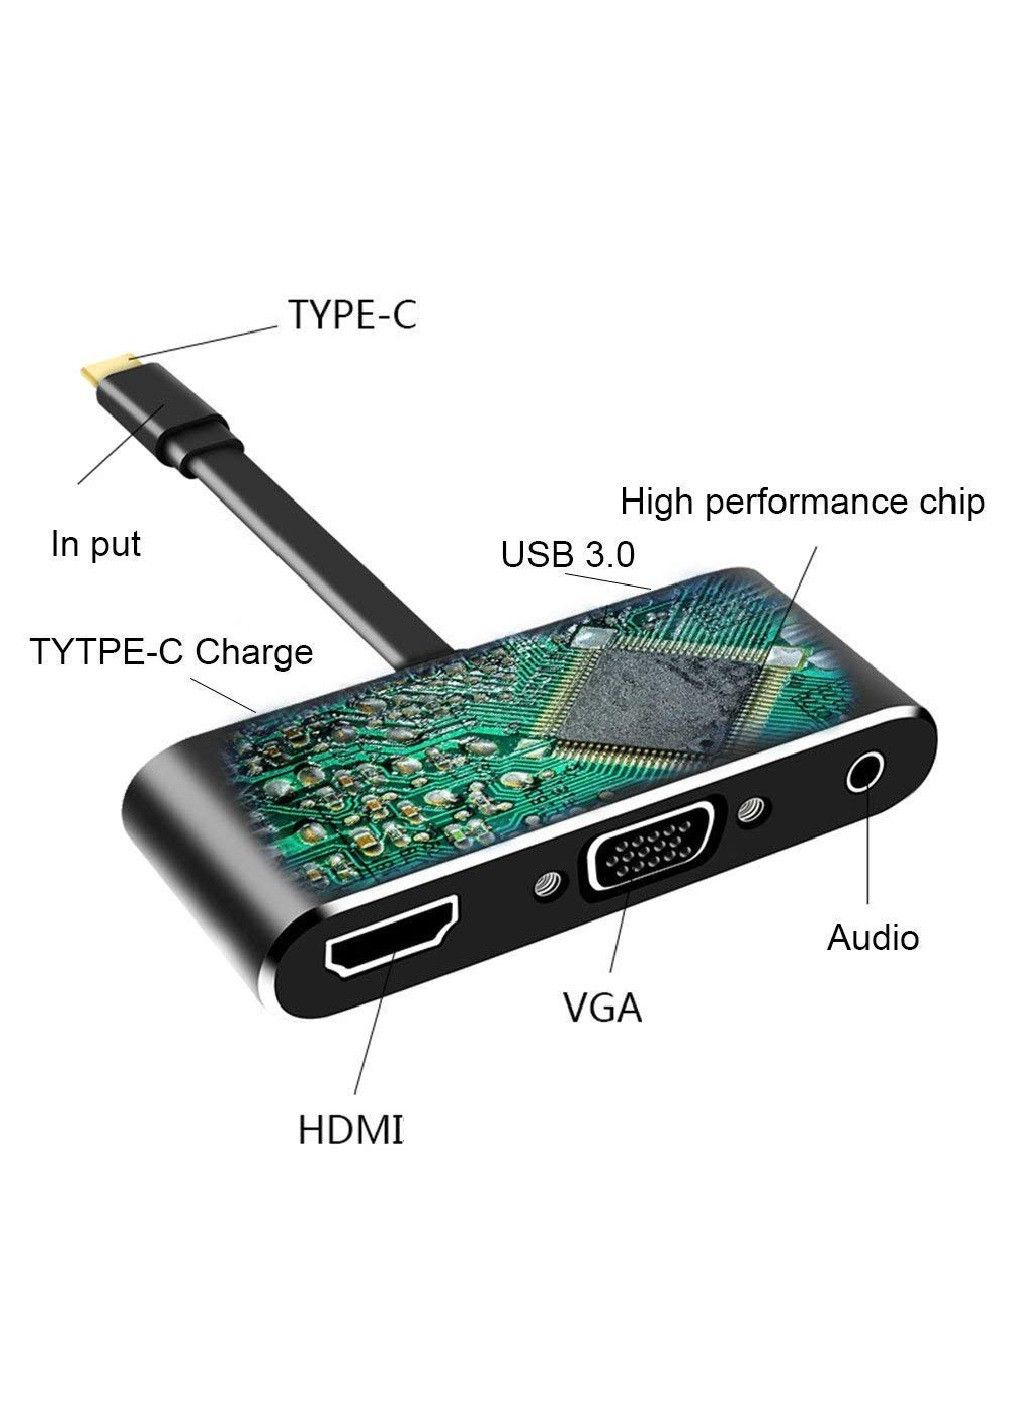 Адаптер хаб 5 в 1 для подключения к ноутбуку смартфону с аудиовыходом под наушники 95x55x20 мм (474854-Prob) Черный Unbranded (260023484)